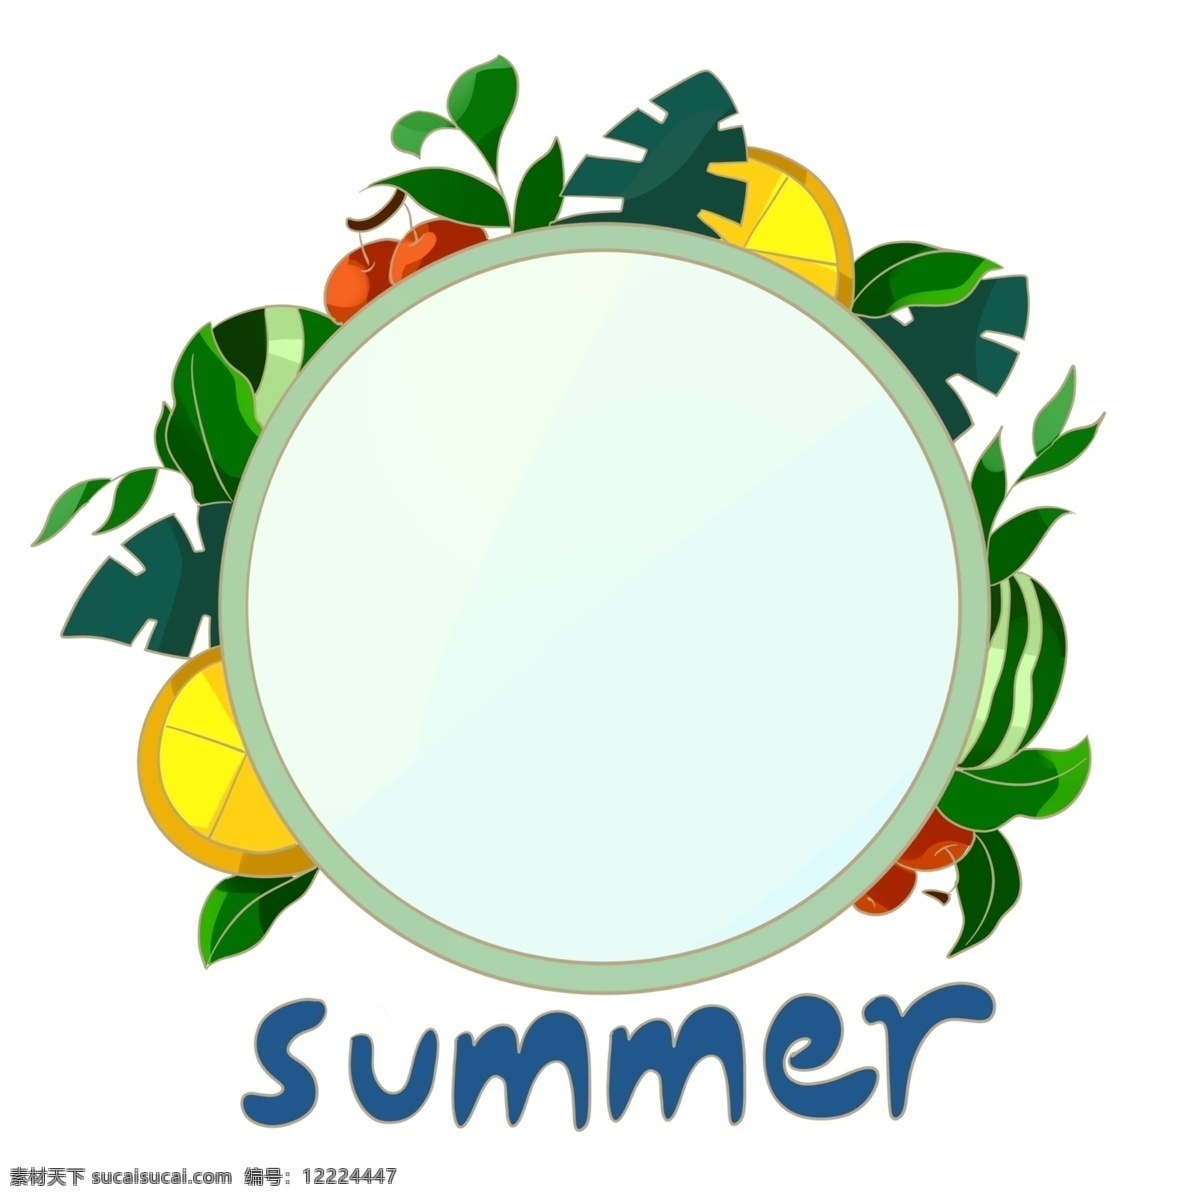 夏日 清新 植物 水果 绿色 边框 夏天到 柠檬 苹果 西瓜 绿色植物 小清新 卡通边框 圆 英文